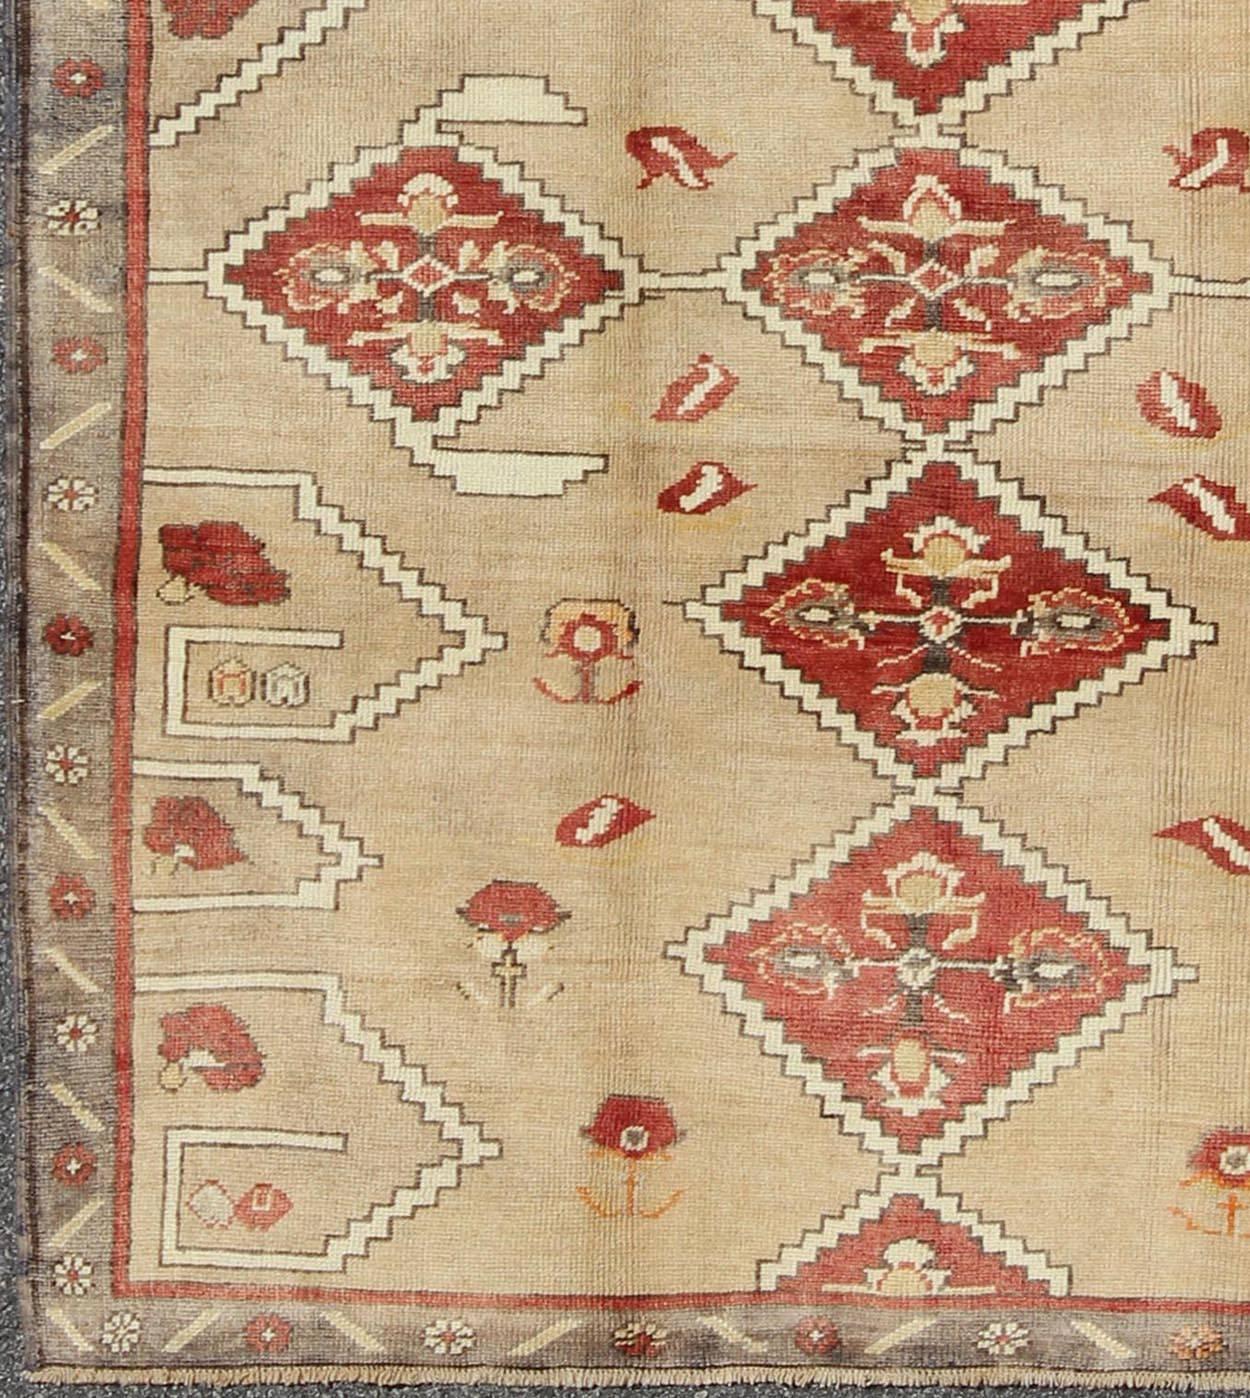 Diamant-Medaillon Vintage türkischen Oushak Teppich in rot, braun und creme, Teppich enc-92975, Herkunftsland / Typ: Türkei / Oushak, um 1940

Dieser alte Oushak-Teppich zeichnet sich durch eine einzigartige Farbmischung und ein kompliziertes,